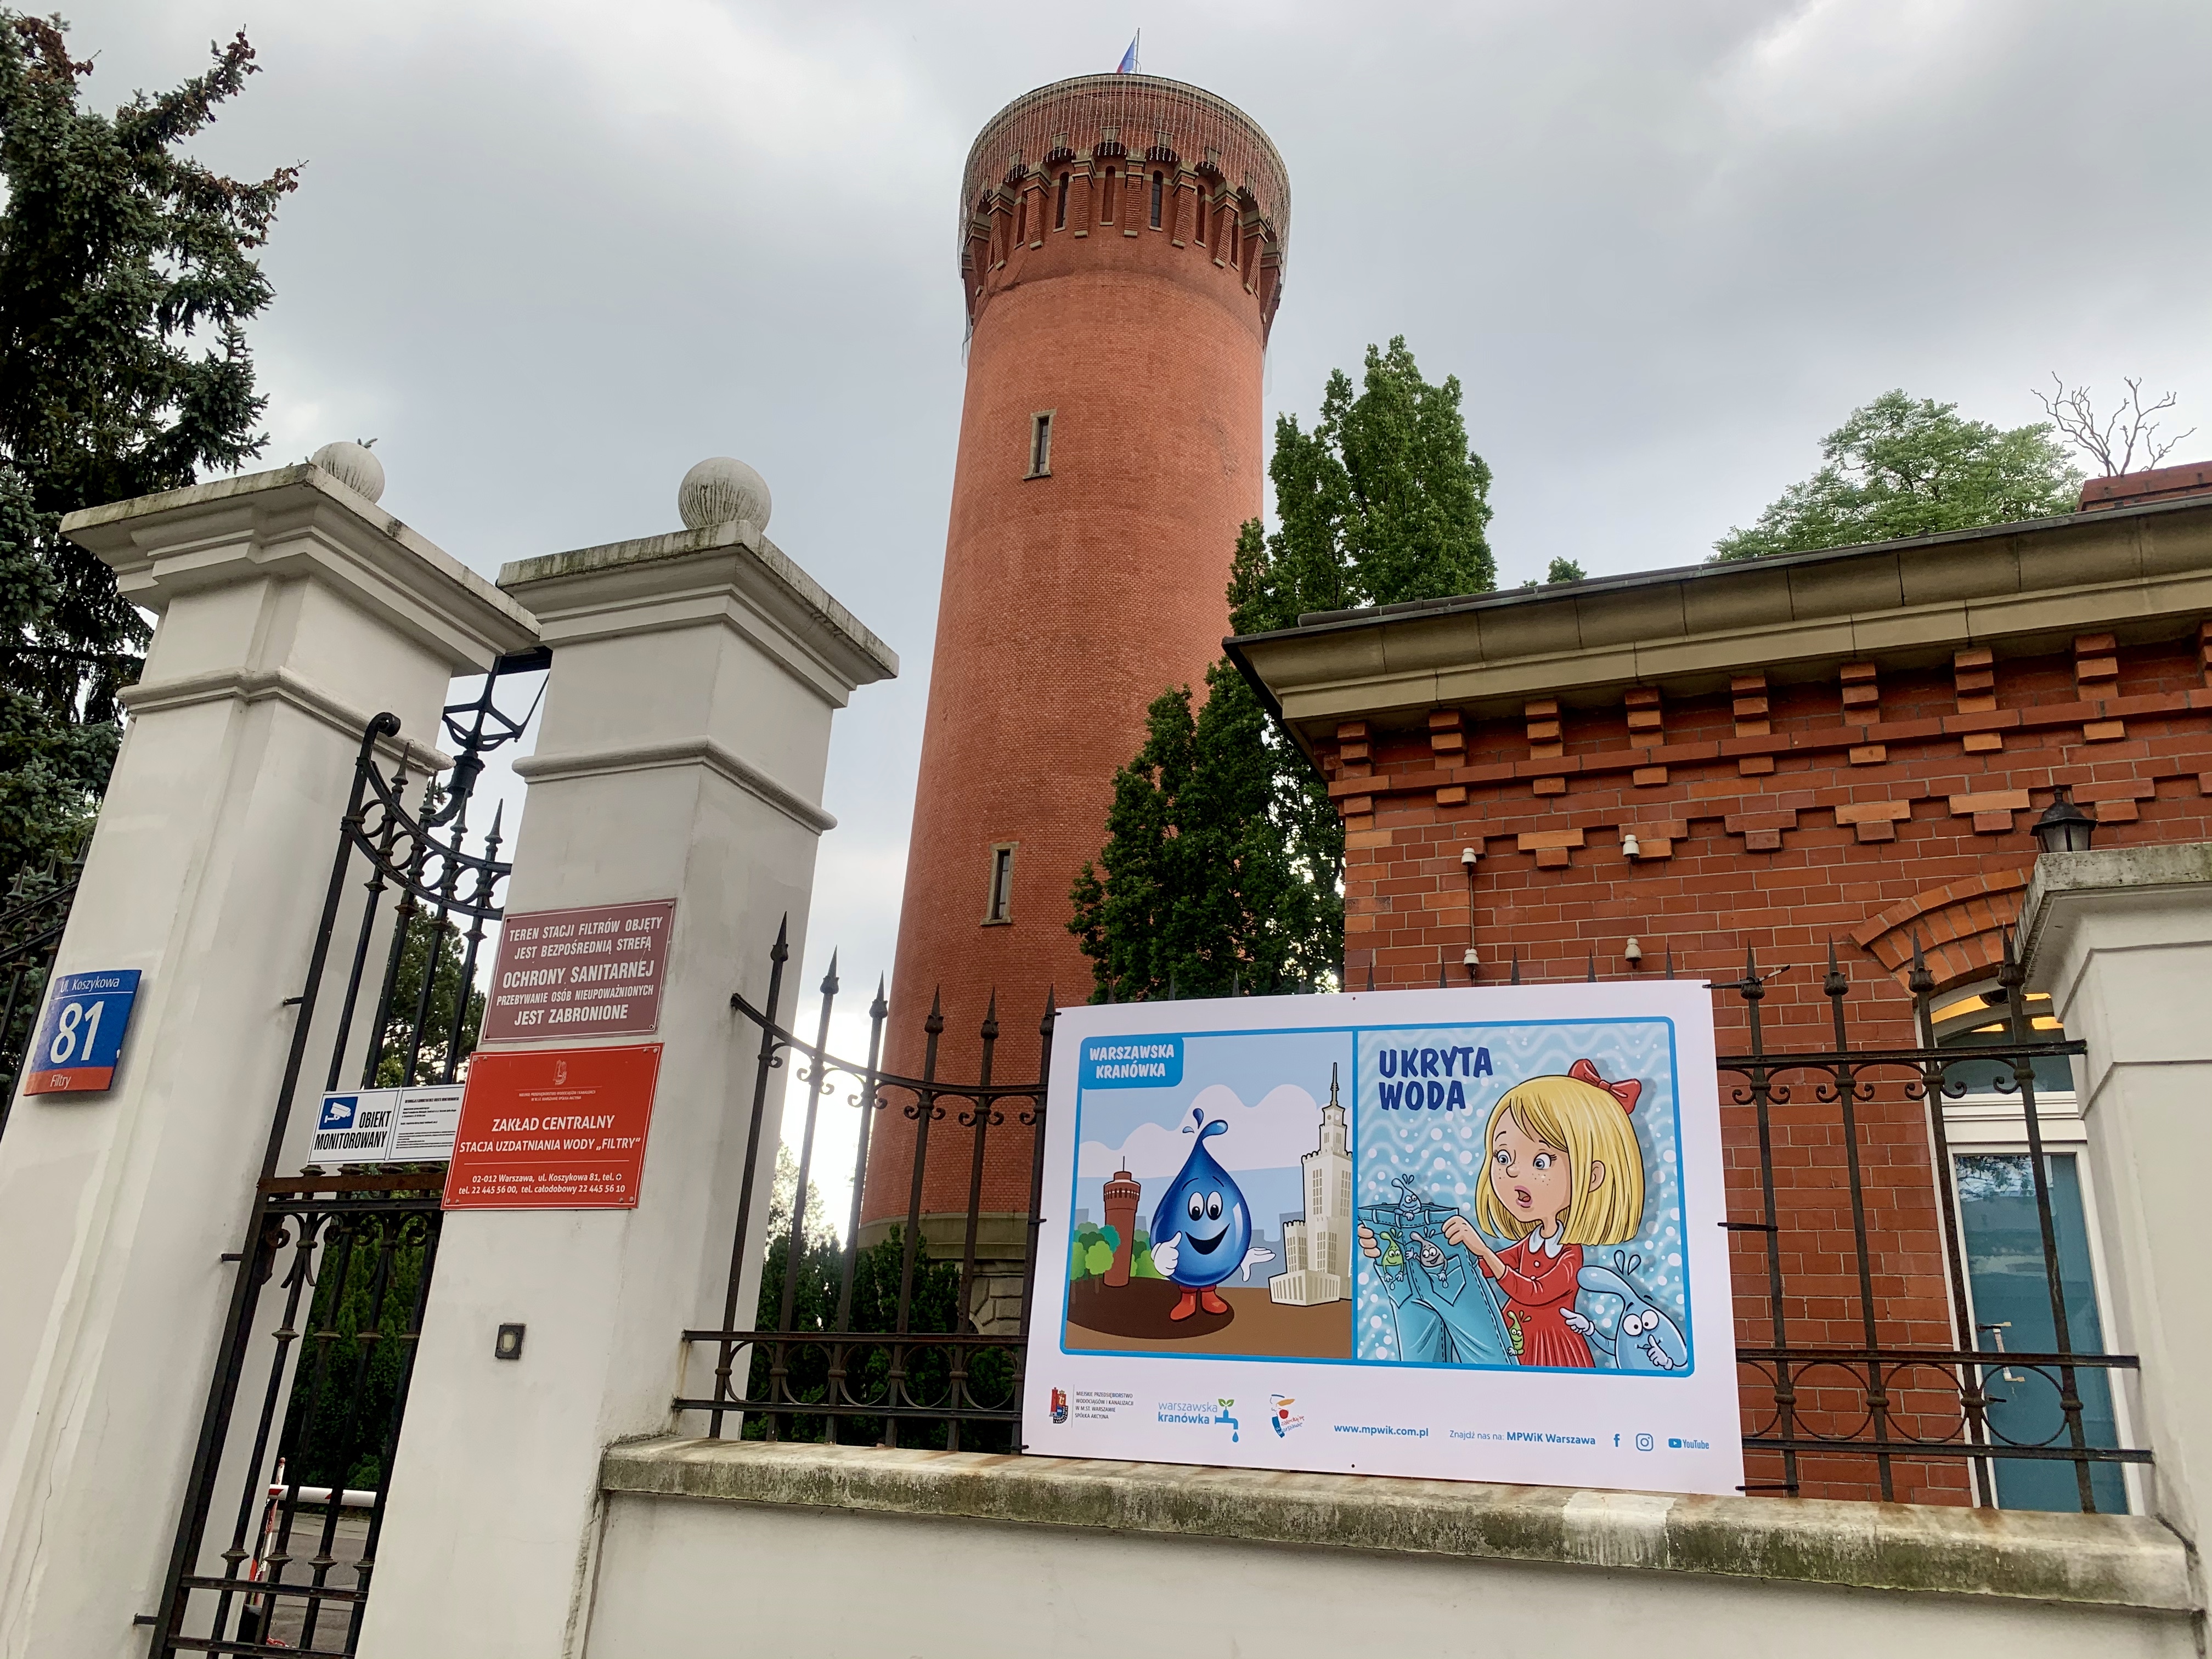 Wystawa edukacyjna Warszawska kranówka – ukryta woda